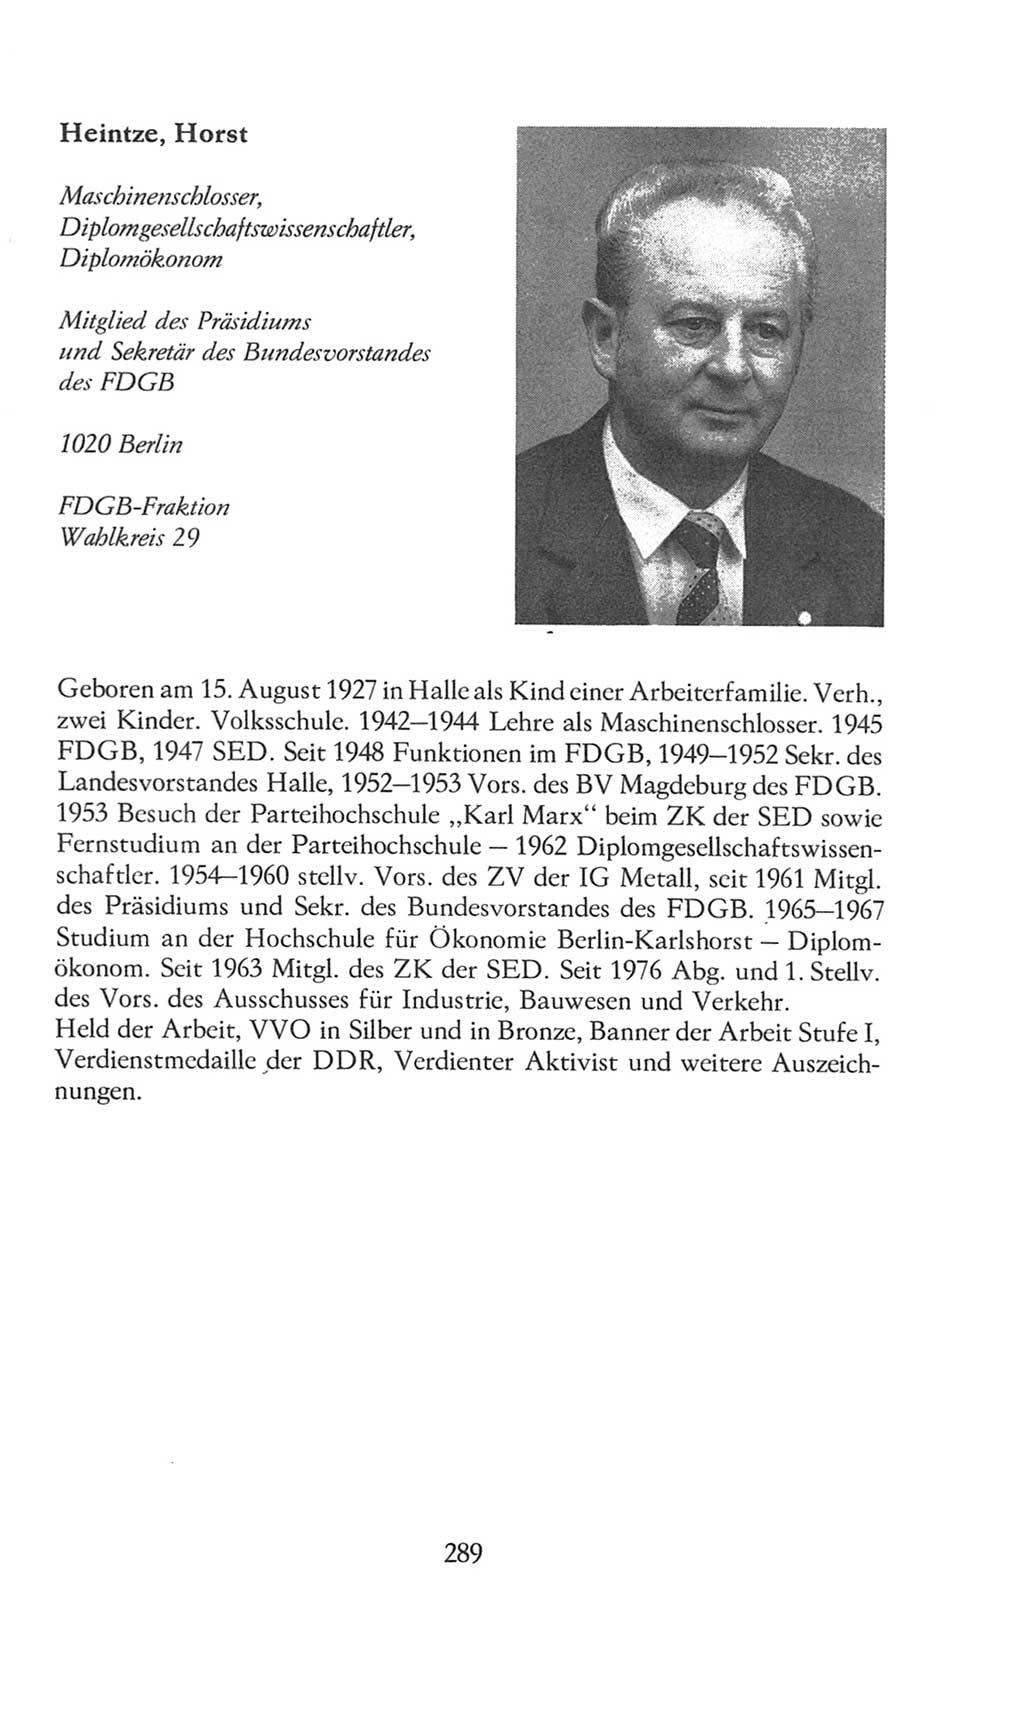 Volkskammer (VK) der Deutschen Demokratischen Republik (DDR), 8. Wahlperiode 1981-1986, Seite 289 (VK. DDR 8. WP. 1981-1986, S. 289)